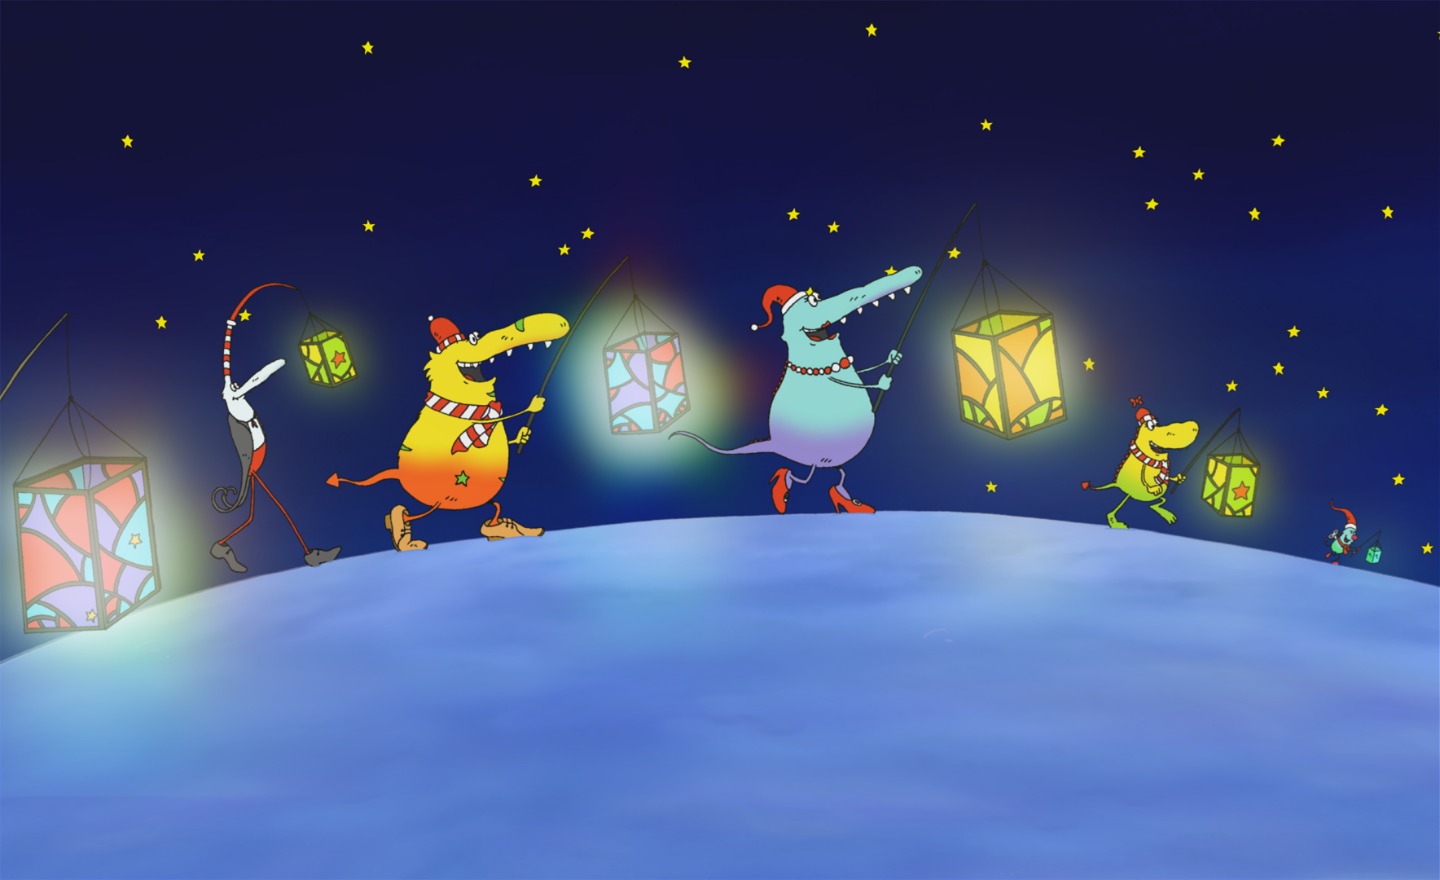 Molly och hennes monstervänner går i en julparad med ljuslyktor i händerna.